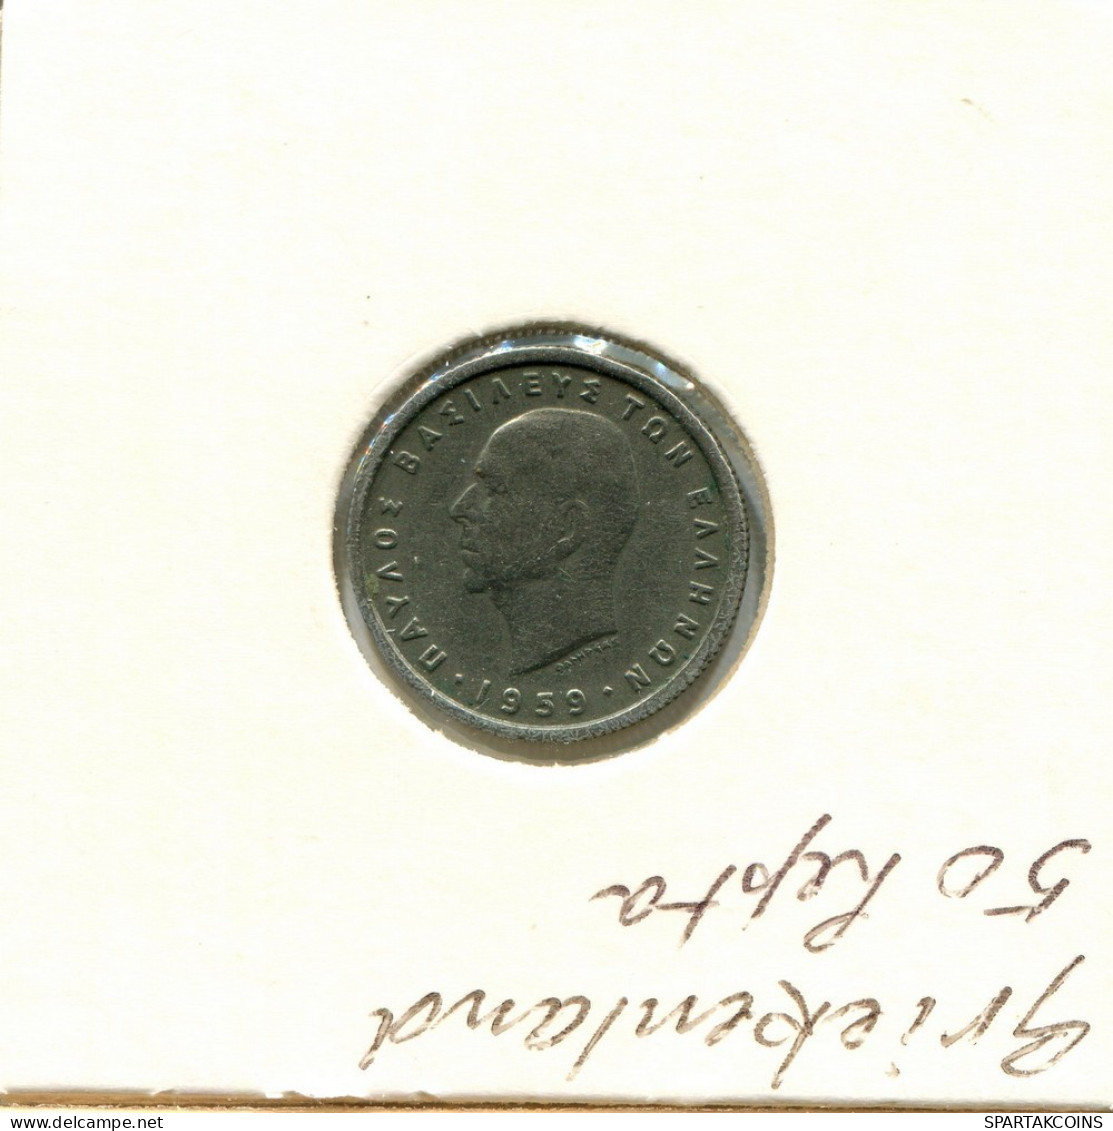 50 LEPTA 1959 GRECIA GREECE Moneda #AY303.E.A - Griechenland